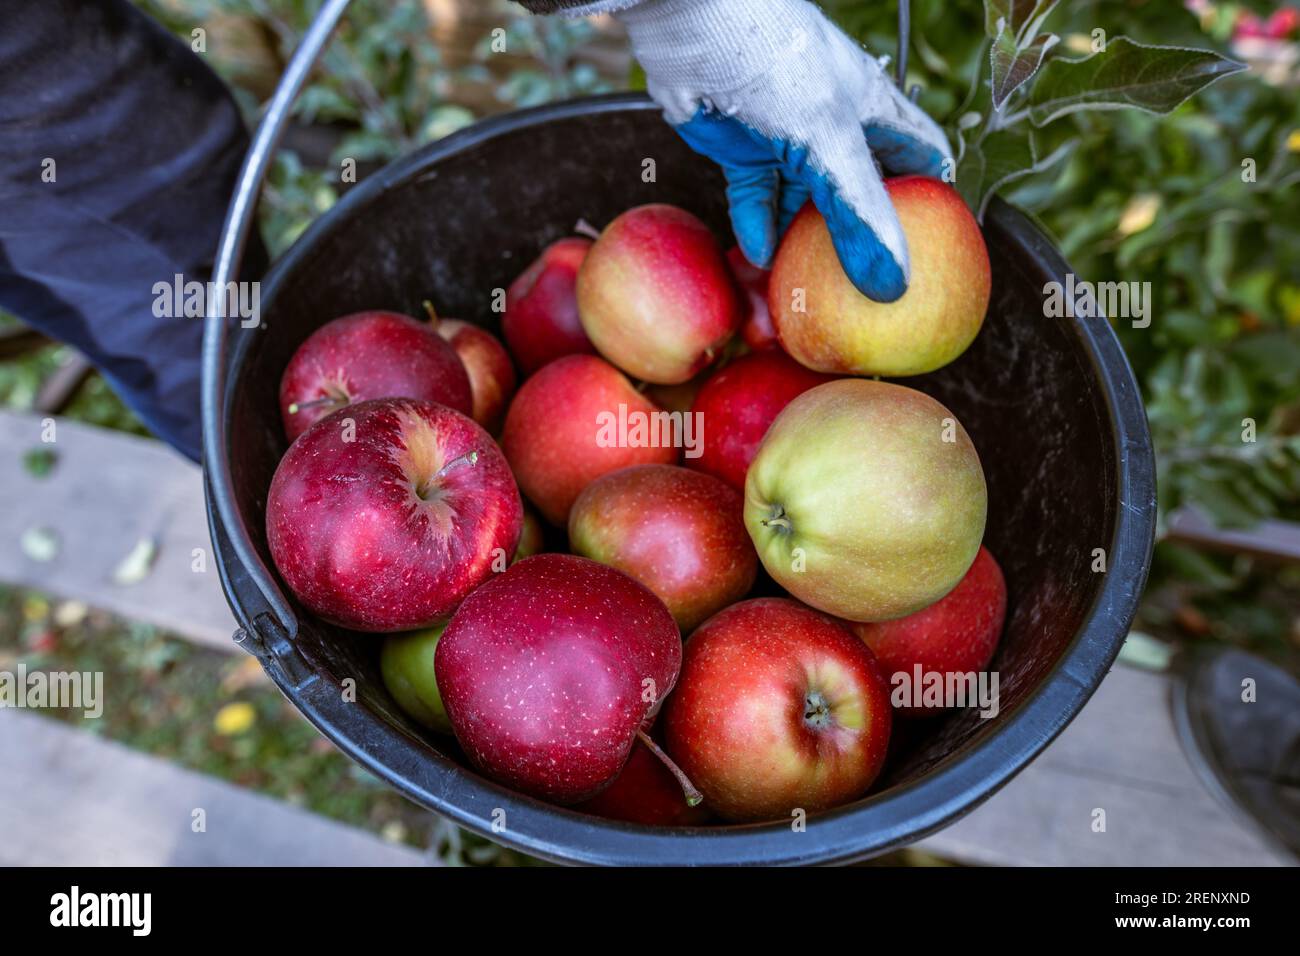 Die Ernte frischer reifer roter Äpfel, die gerade von den Ästen gesammelt wurden, wird in große Plastikeimer gefaltet. Produktionskapazität eines Obstbauernhofs in Stockfoto